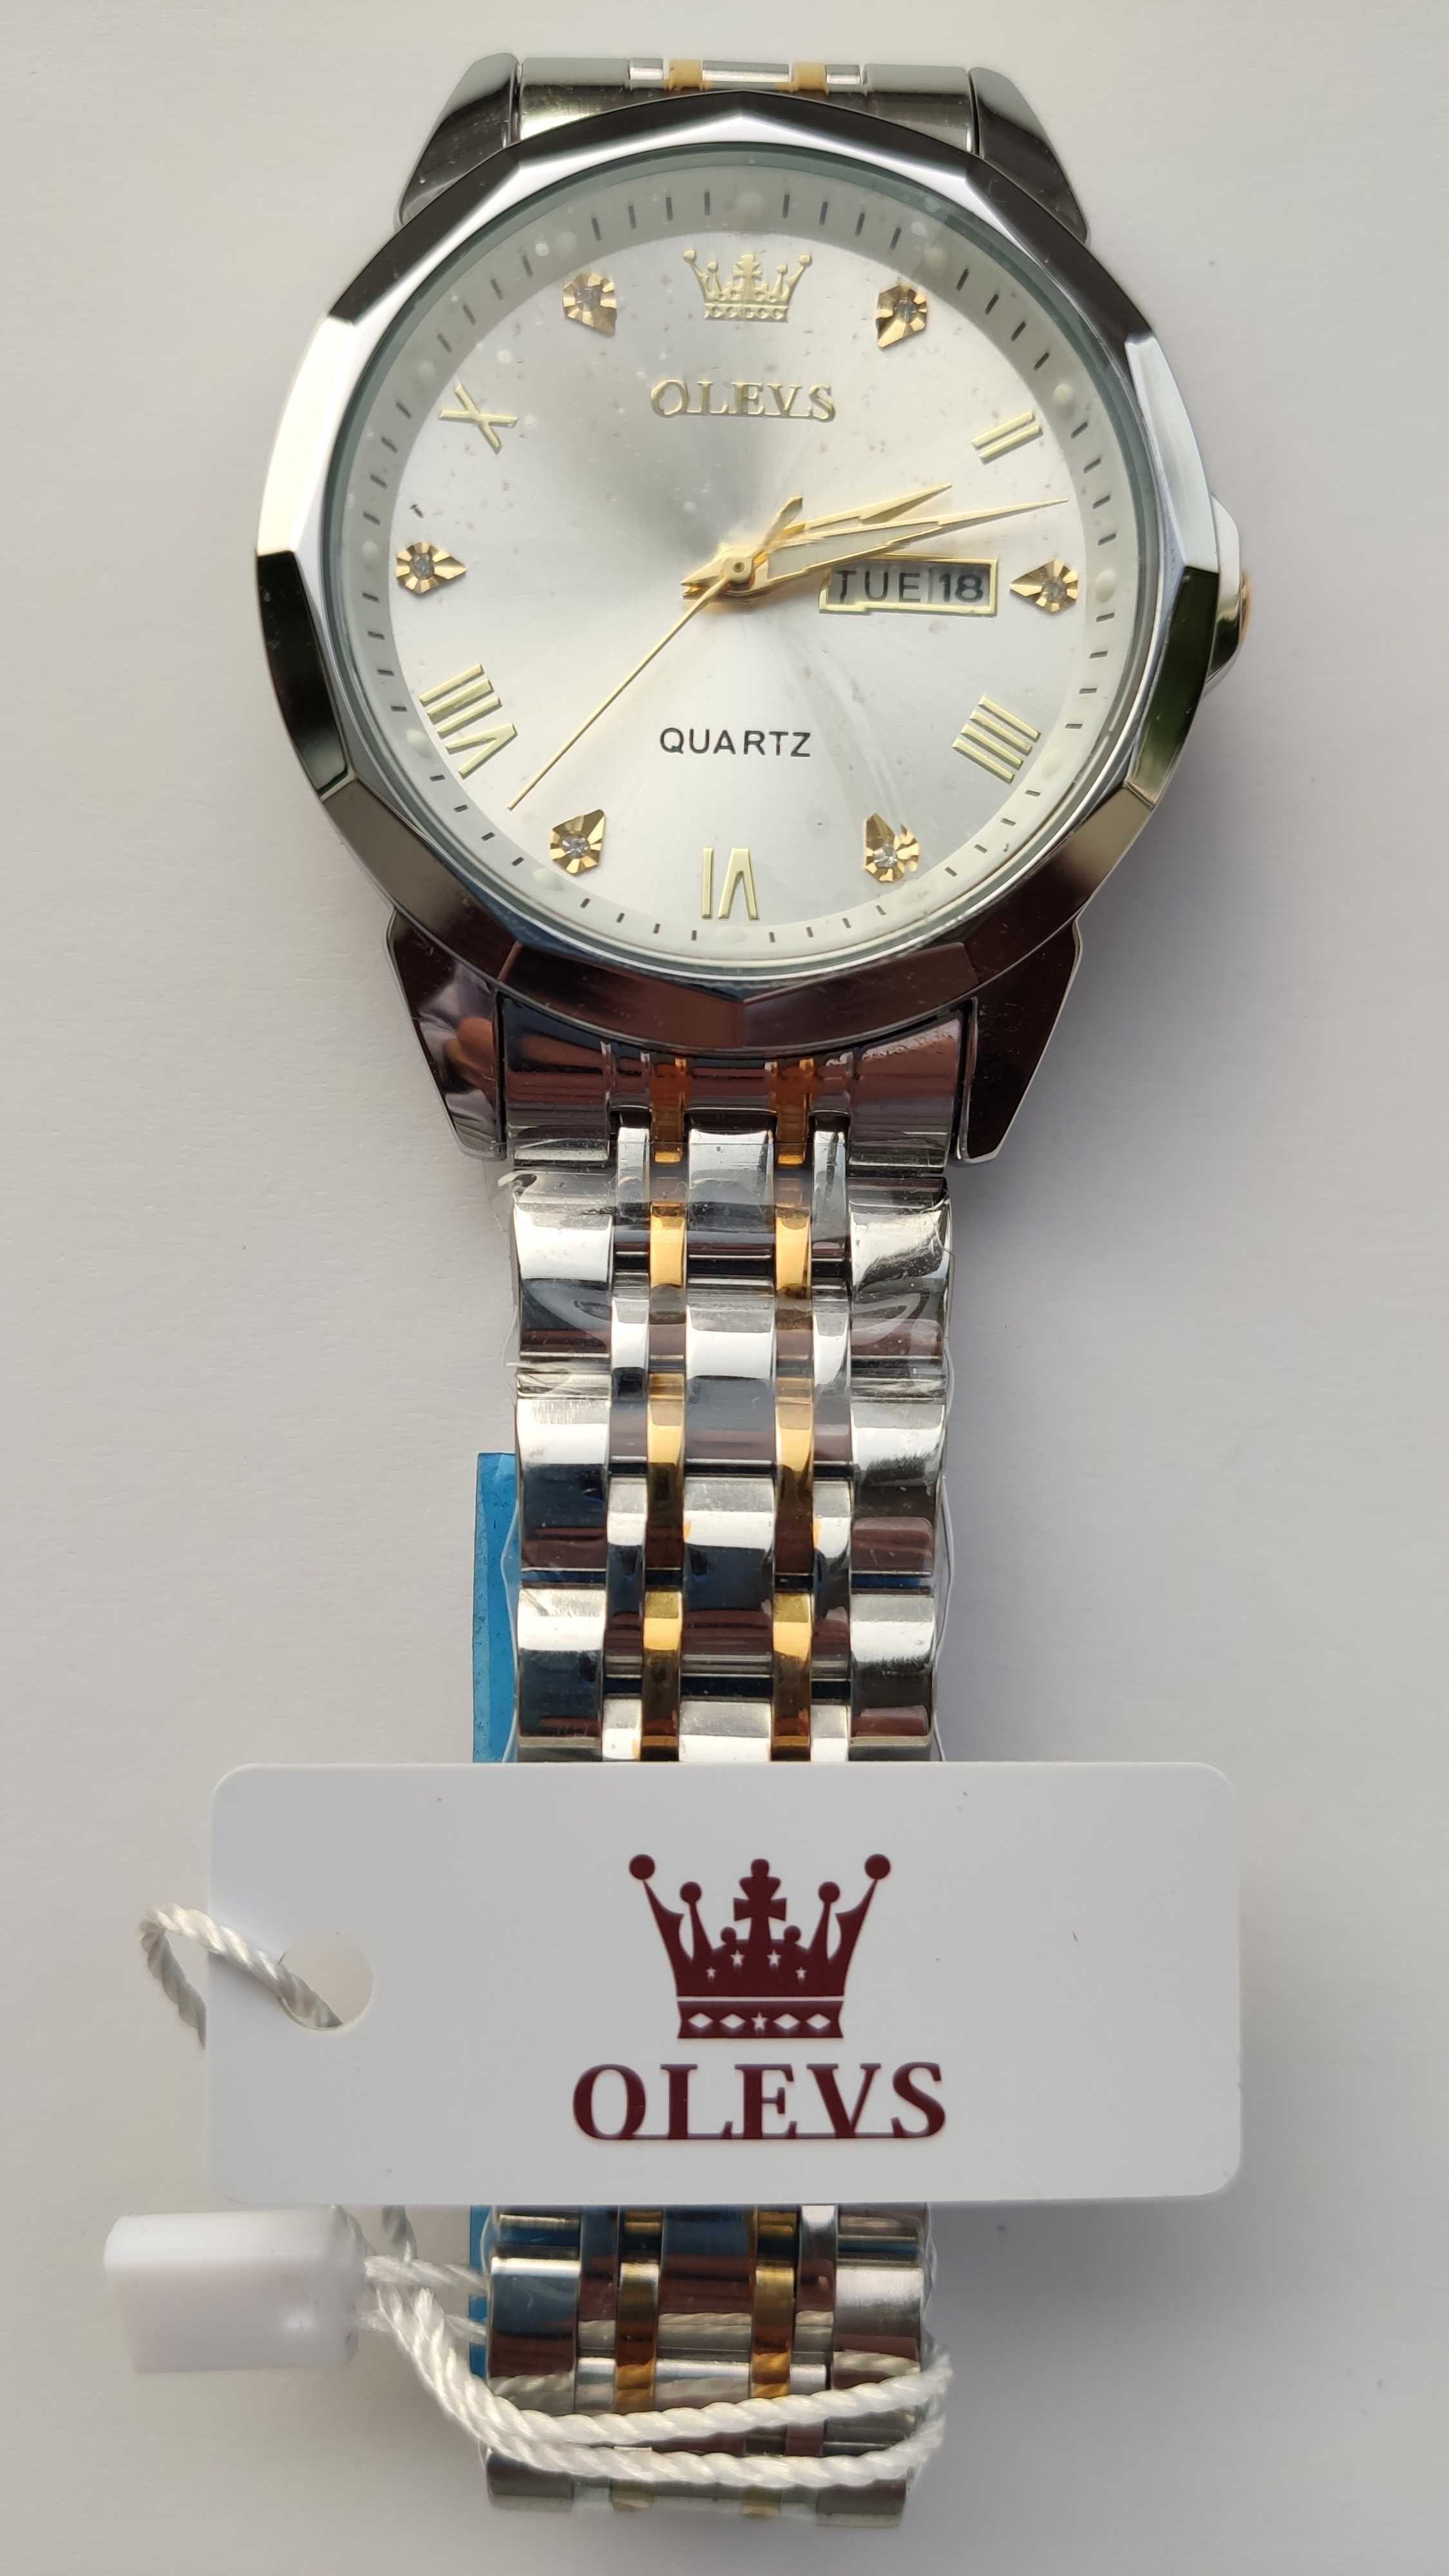 НОВЫЕ кварцевые мужские часы OLEVS модели 9931 купить недорого Киев